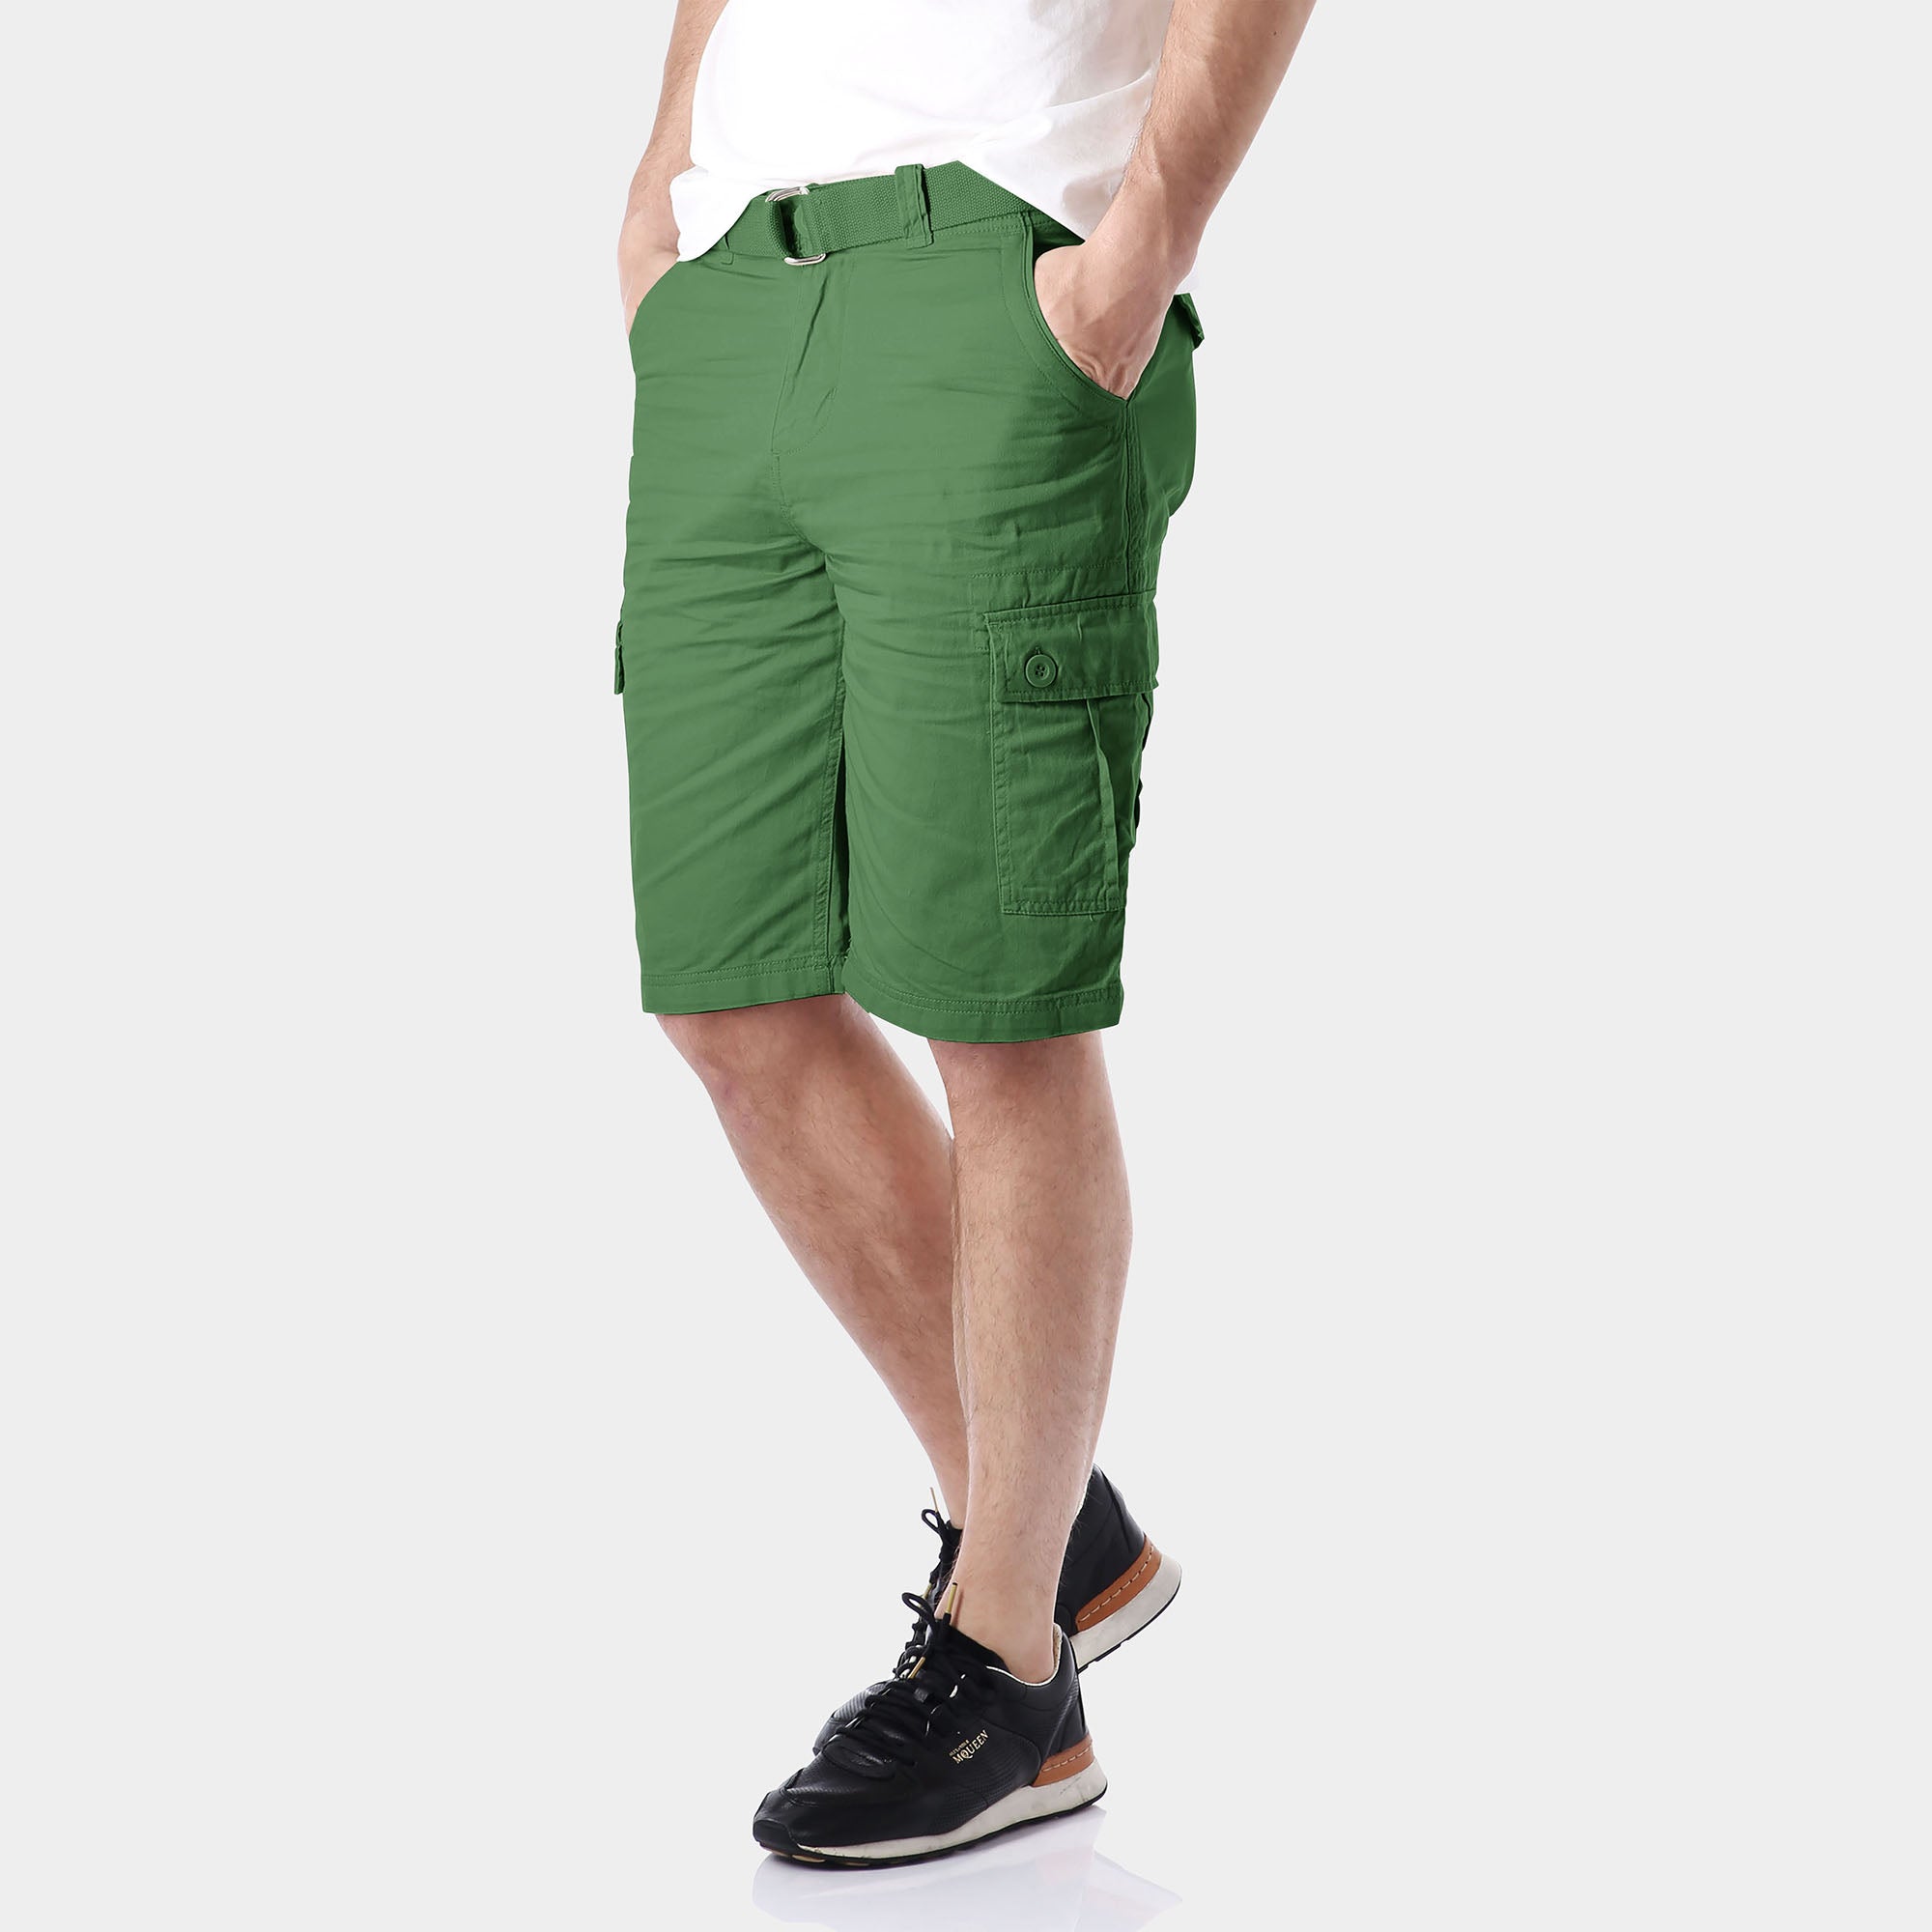 cargo shorts_mens cargo shorts_men's cargo shorts_wrangler cargo shorts_boys cargo shorts_unionbay cargo shorts_old navy cargo shorts_Green